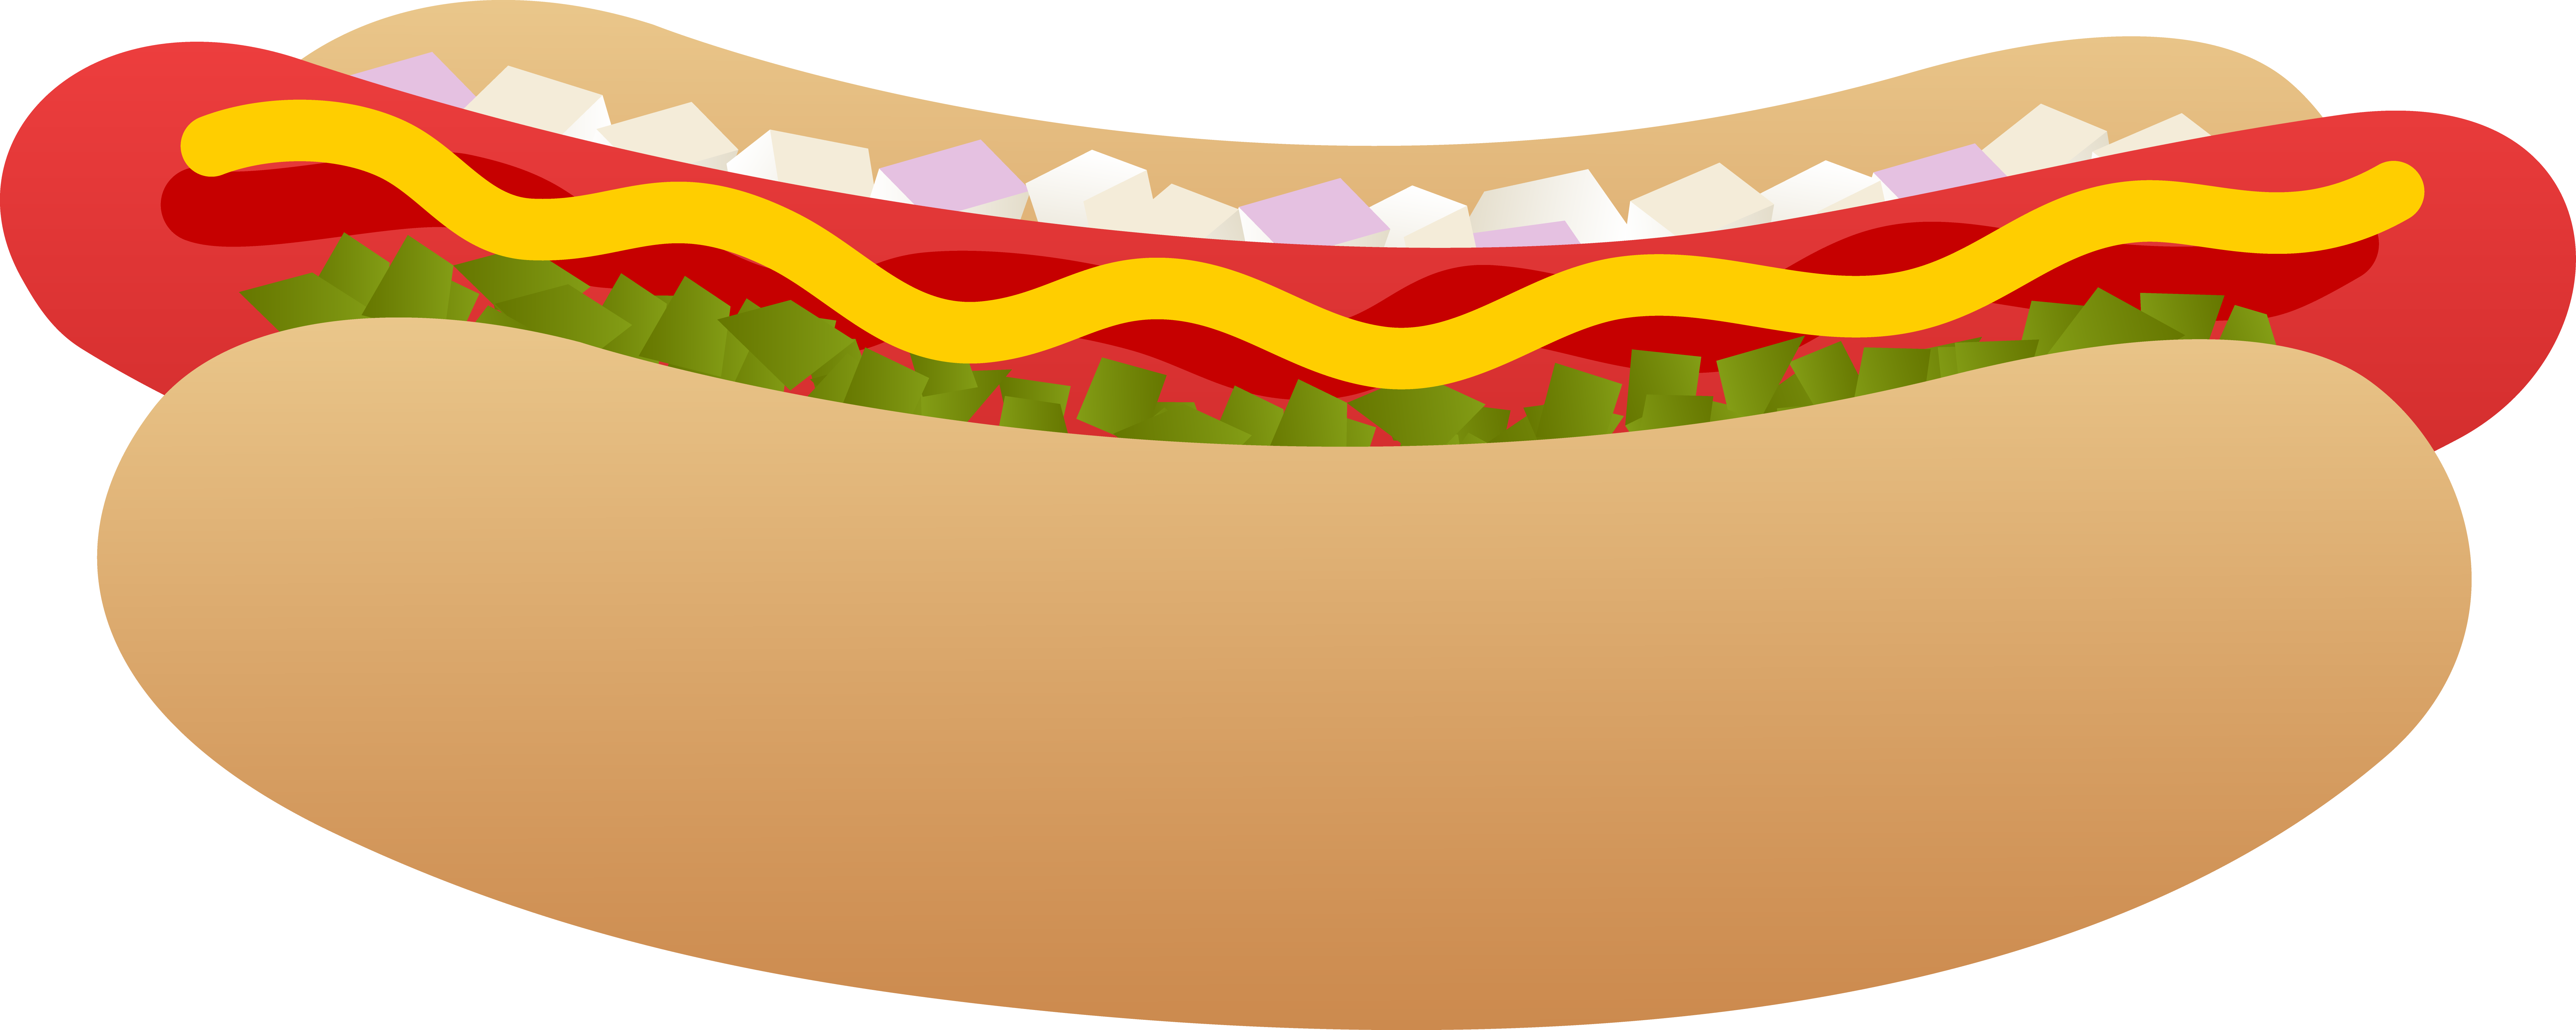 hot dog: Hot Dog Cartoon Hold